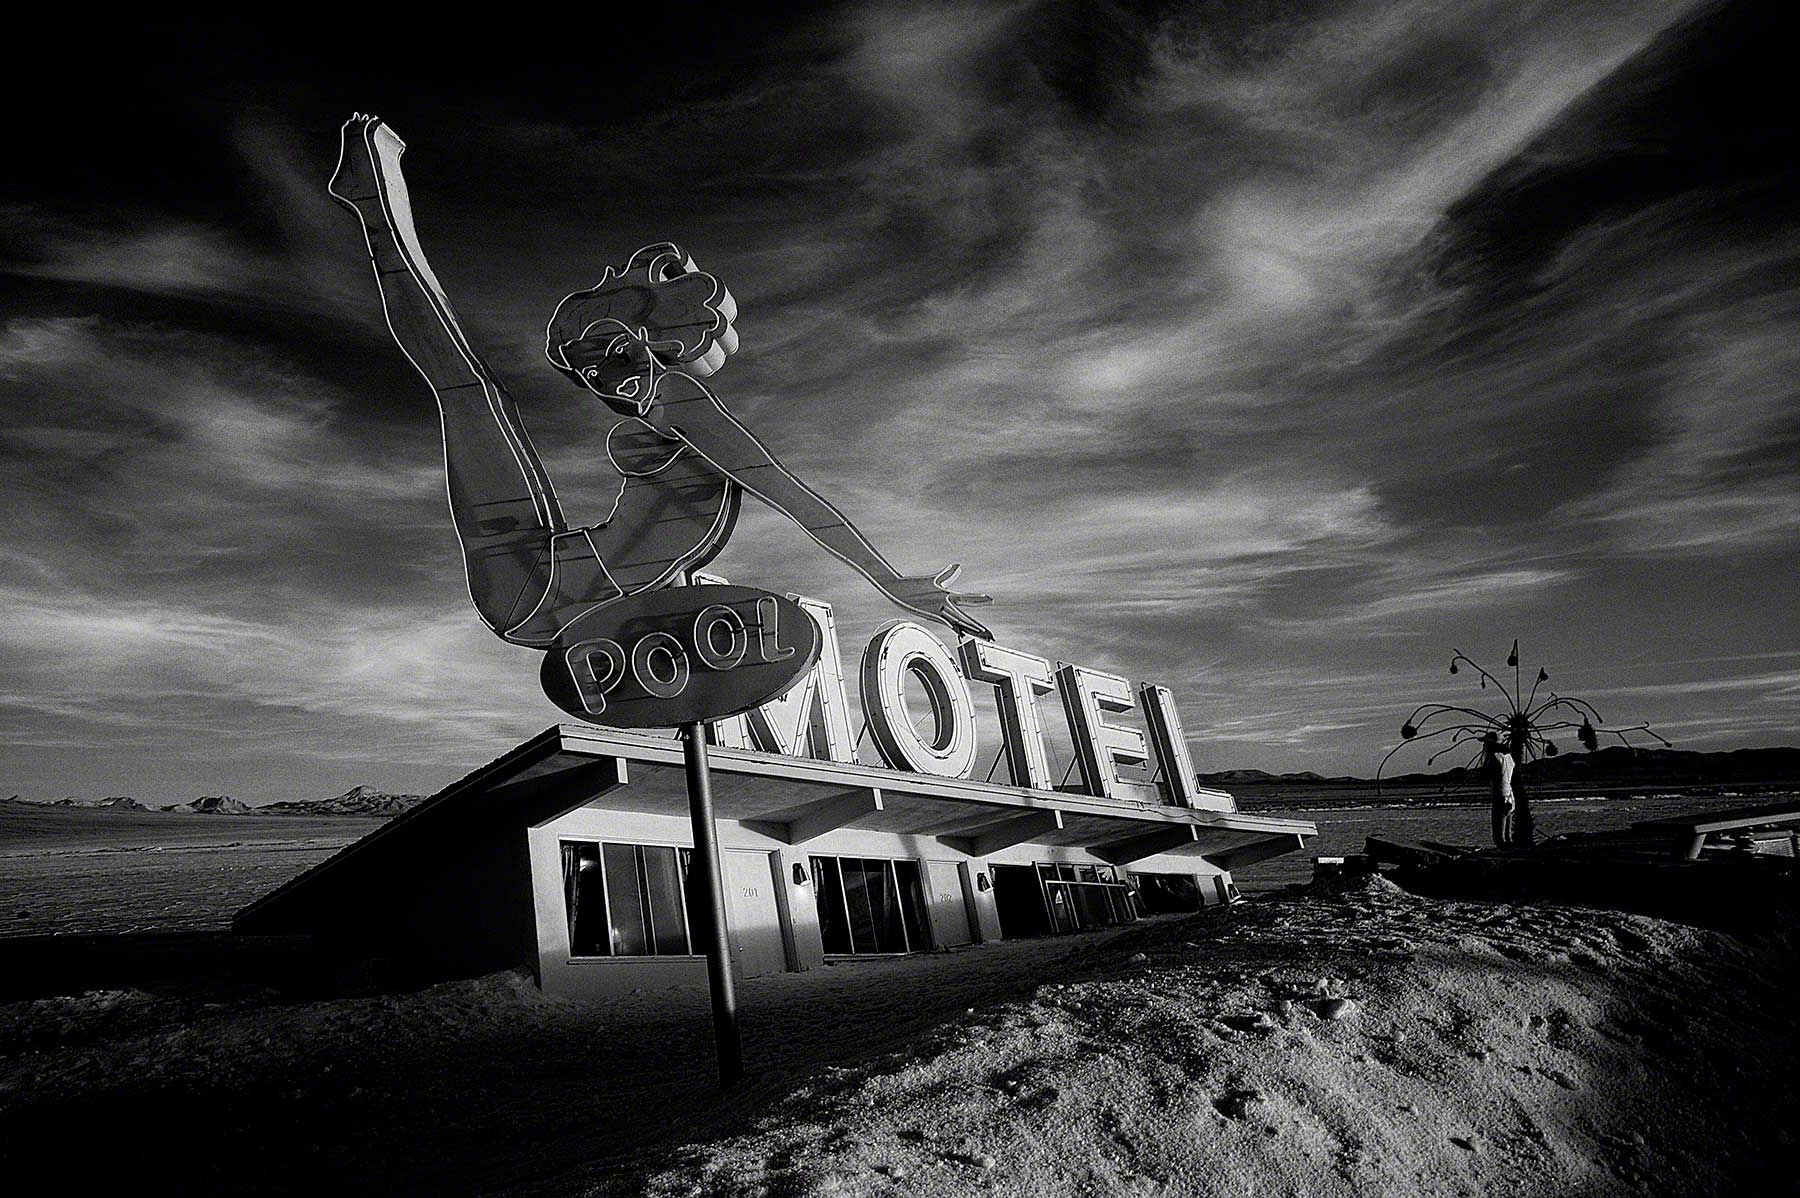 Desert Motel